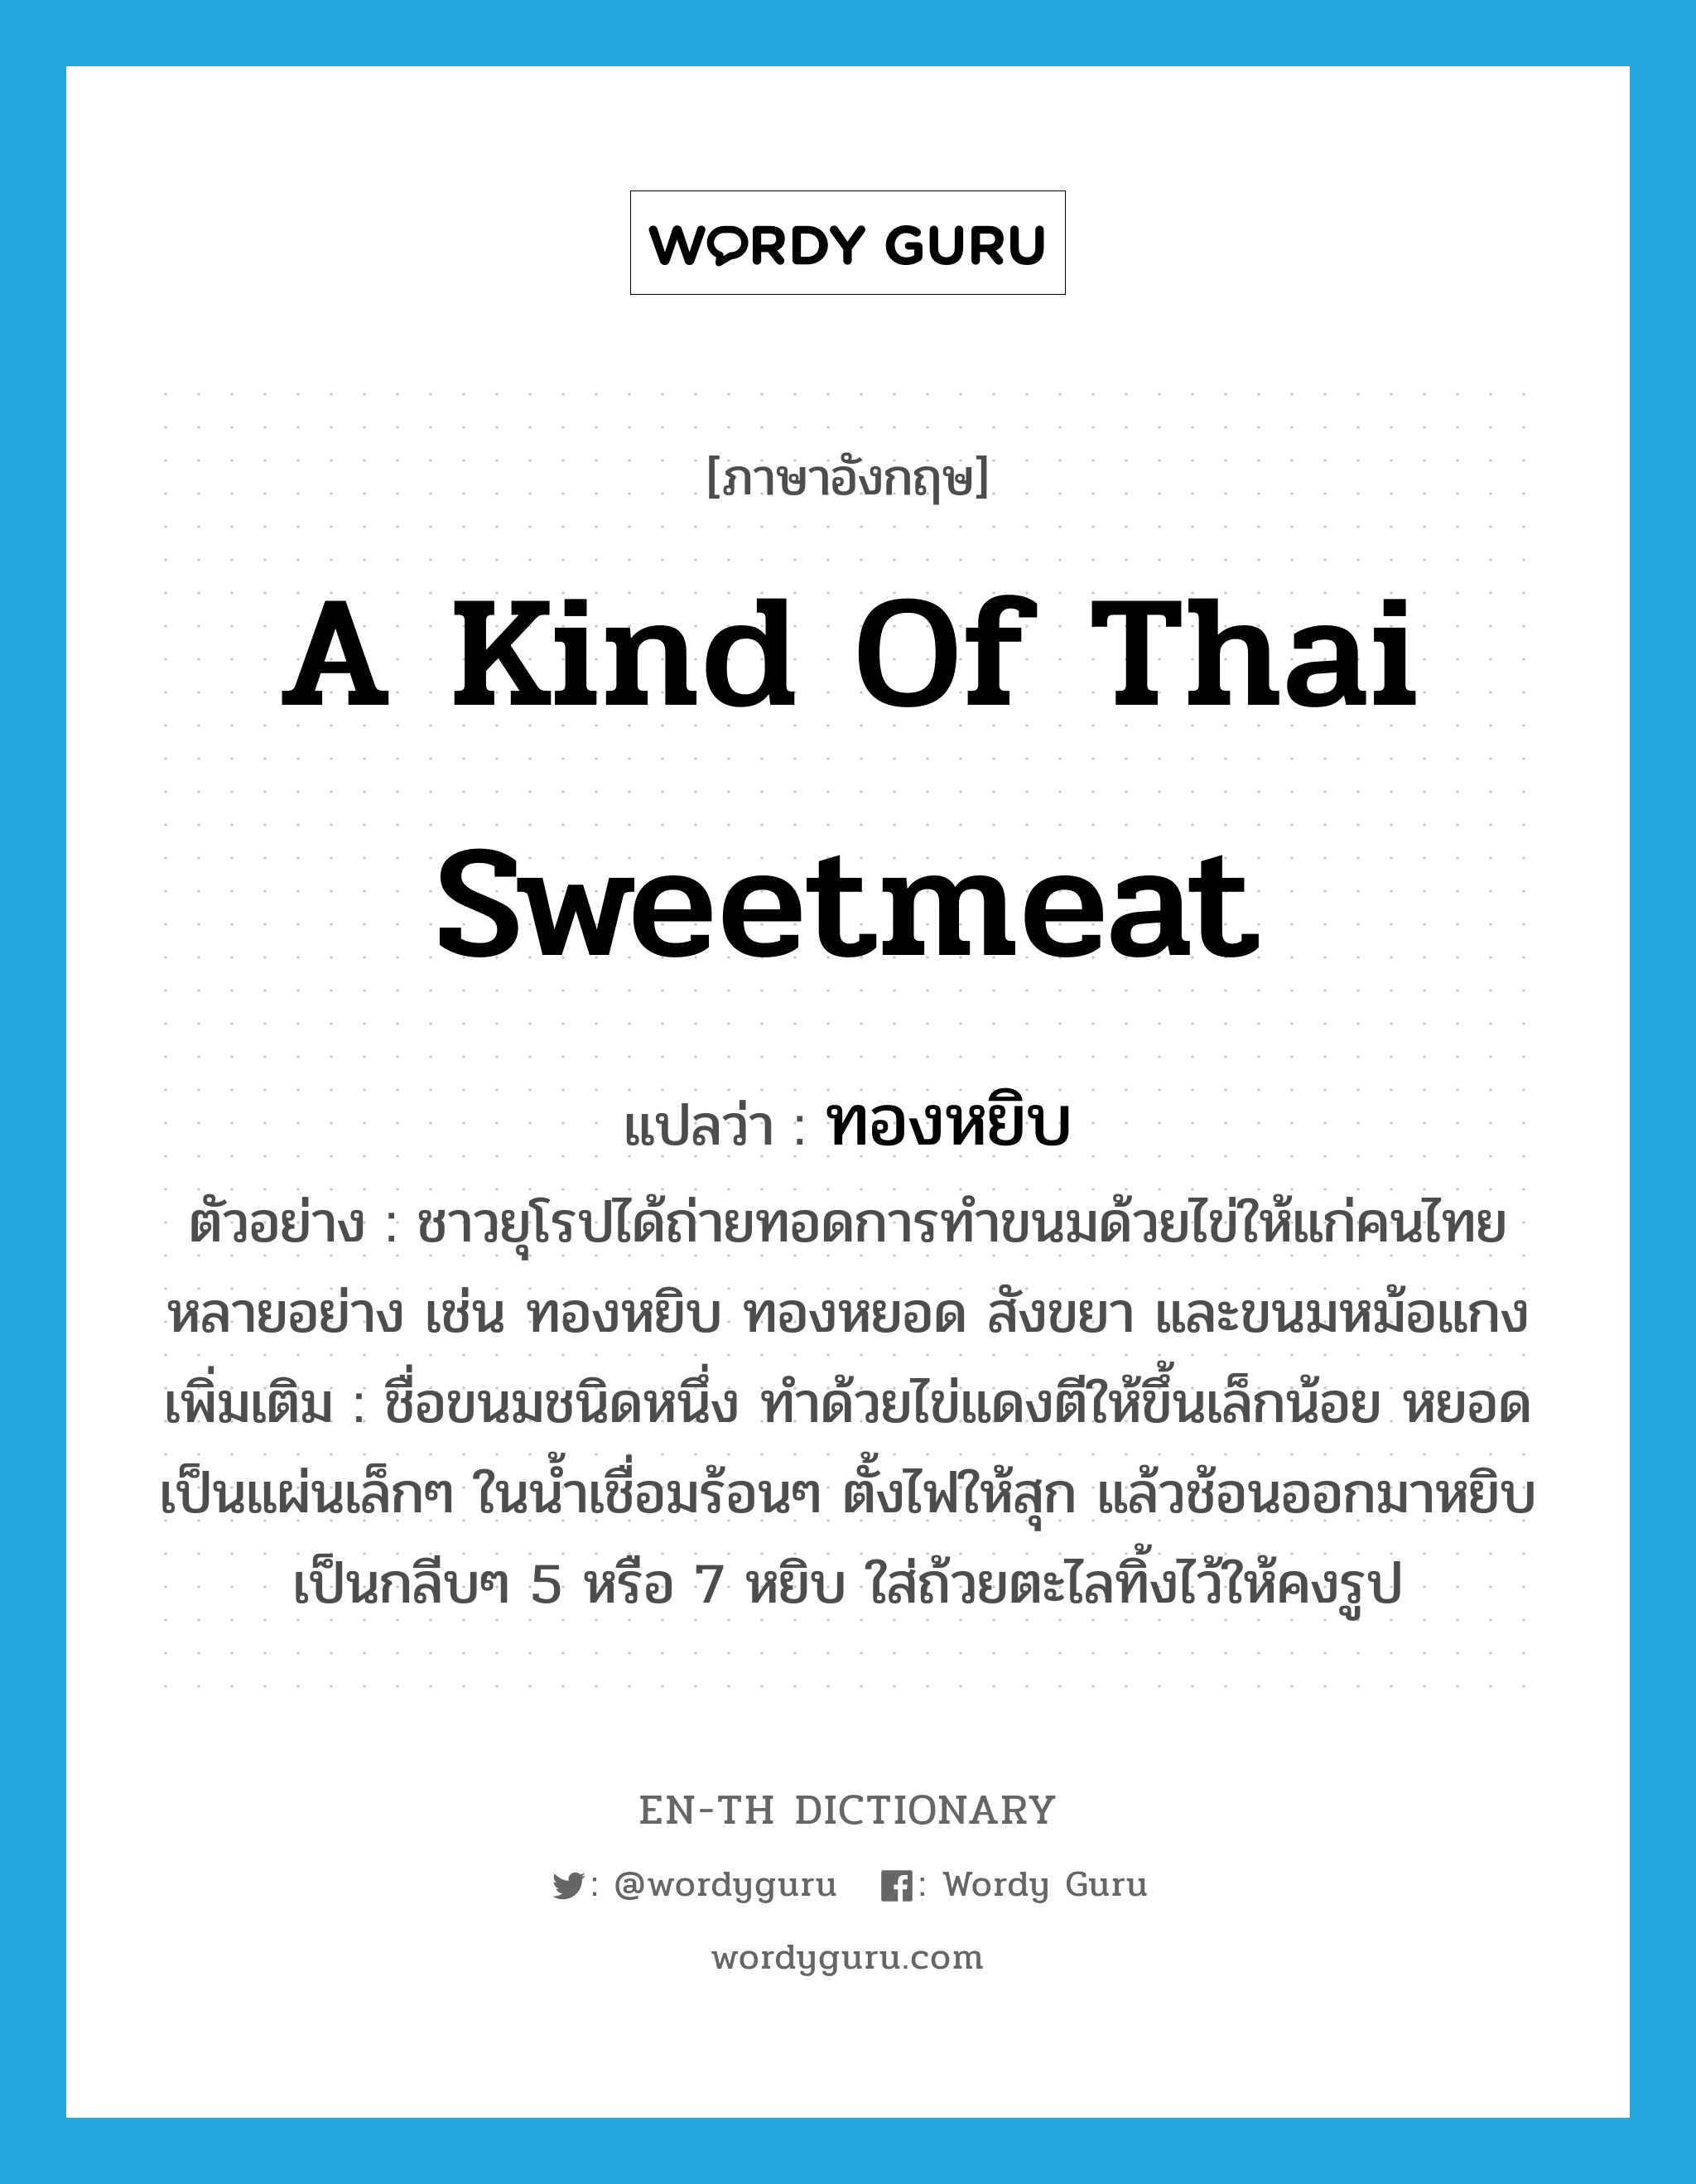 a kind of Thai sweetmeat แปลว่า? คำศัพท์ในกลุ่มประเภท N, คำศัพท์ภาษาอังกฤษ a kind of Thai sweetmeat แปลว่า ทองหยิบ ประเภท N ตัวอย่าง ชาวยุโรปได้ถ่ายทอดการทำขนมด้วยไข่ให้แก่คนไทยหลายอย่าง เช่น ทองหยิบ ทองหยอด สังขยา และขนมหม้อแกง เพิ่มเติม ชื่อขนมชนิดหนึ่ง ทำด้วยไข่แดงตีให้ขึ้นเล็กน้อย หยอดเป็นแผ่นเล็กๆ ในน้ำเชื่อมร้อนๆ ตั้งไฟให้สุก แล้วช้อนออกมาหยิบเป็นกลีบๆ 5 หรือ 7 หยิบ ใส่ถ้วยตะไลทิ้งไว้ให้คงรูป หมวด N